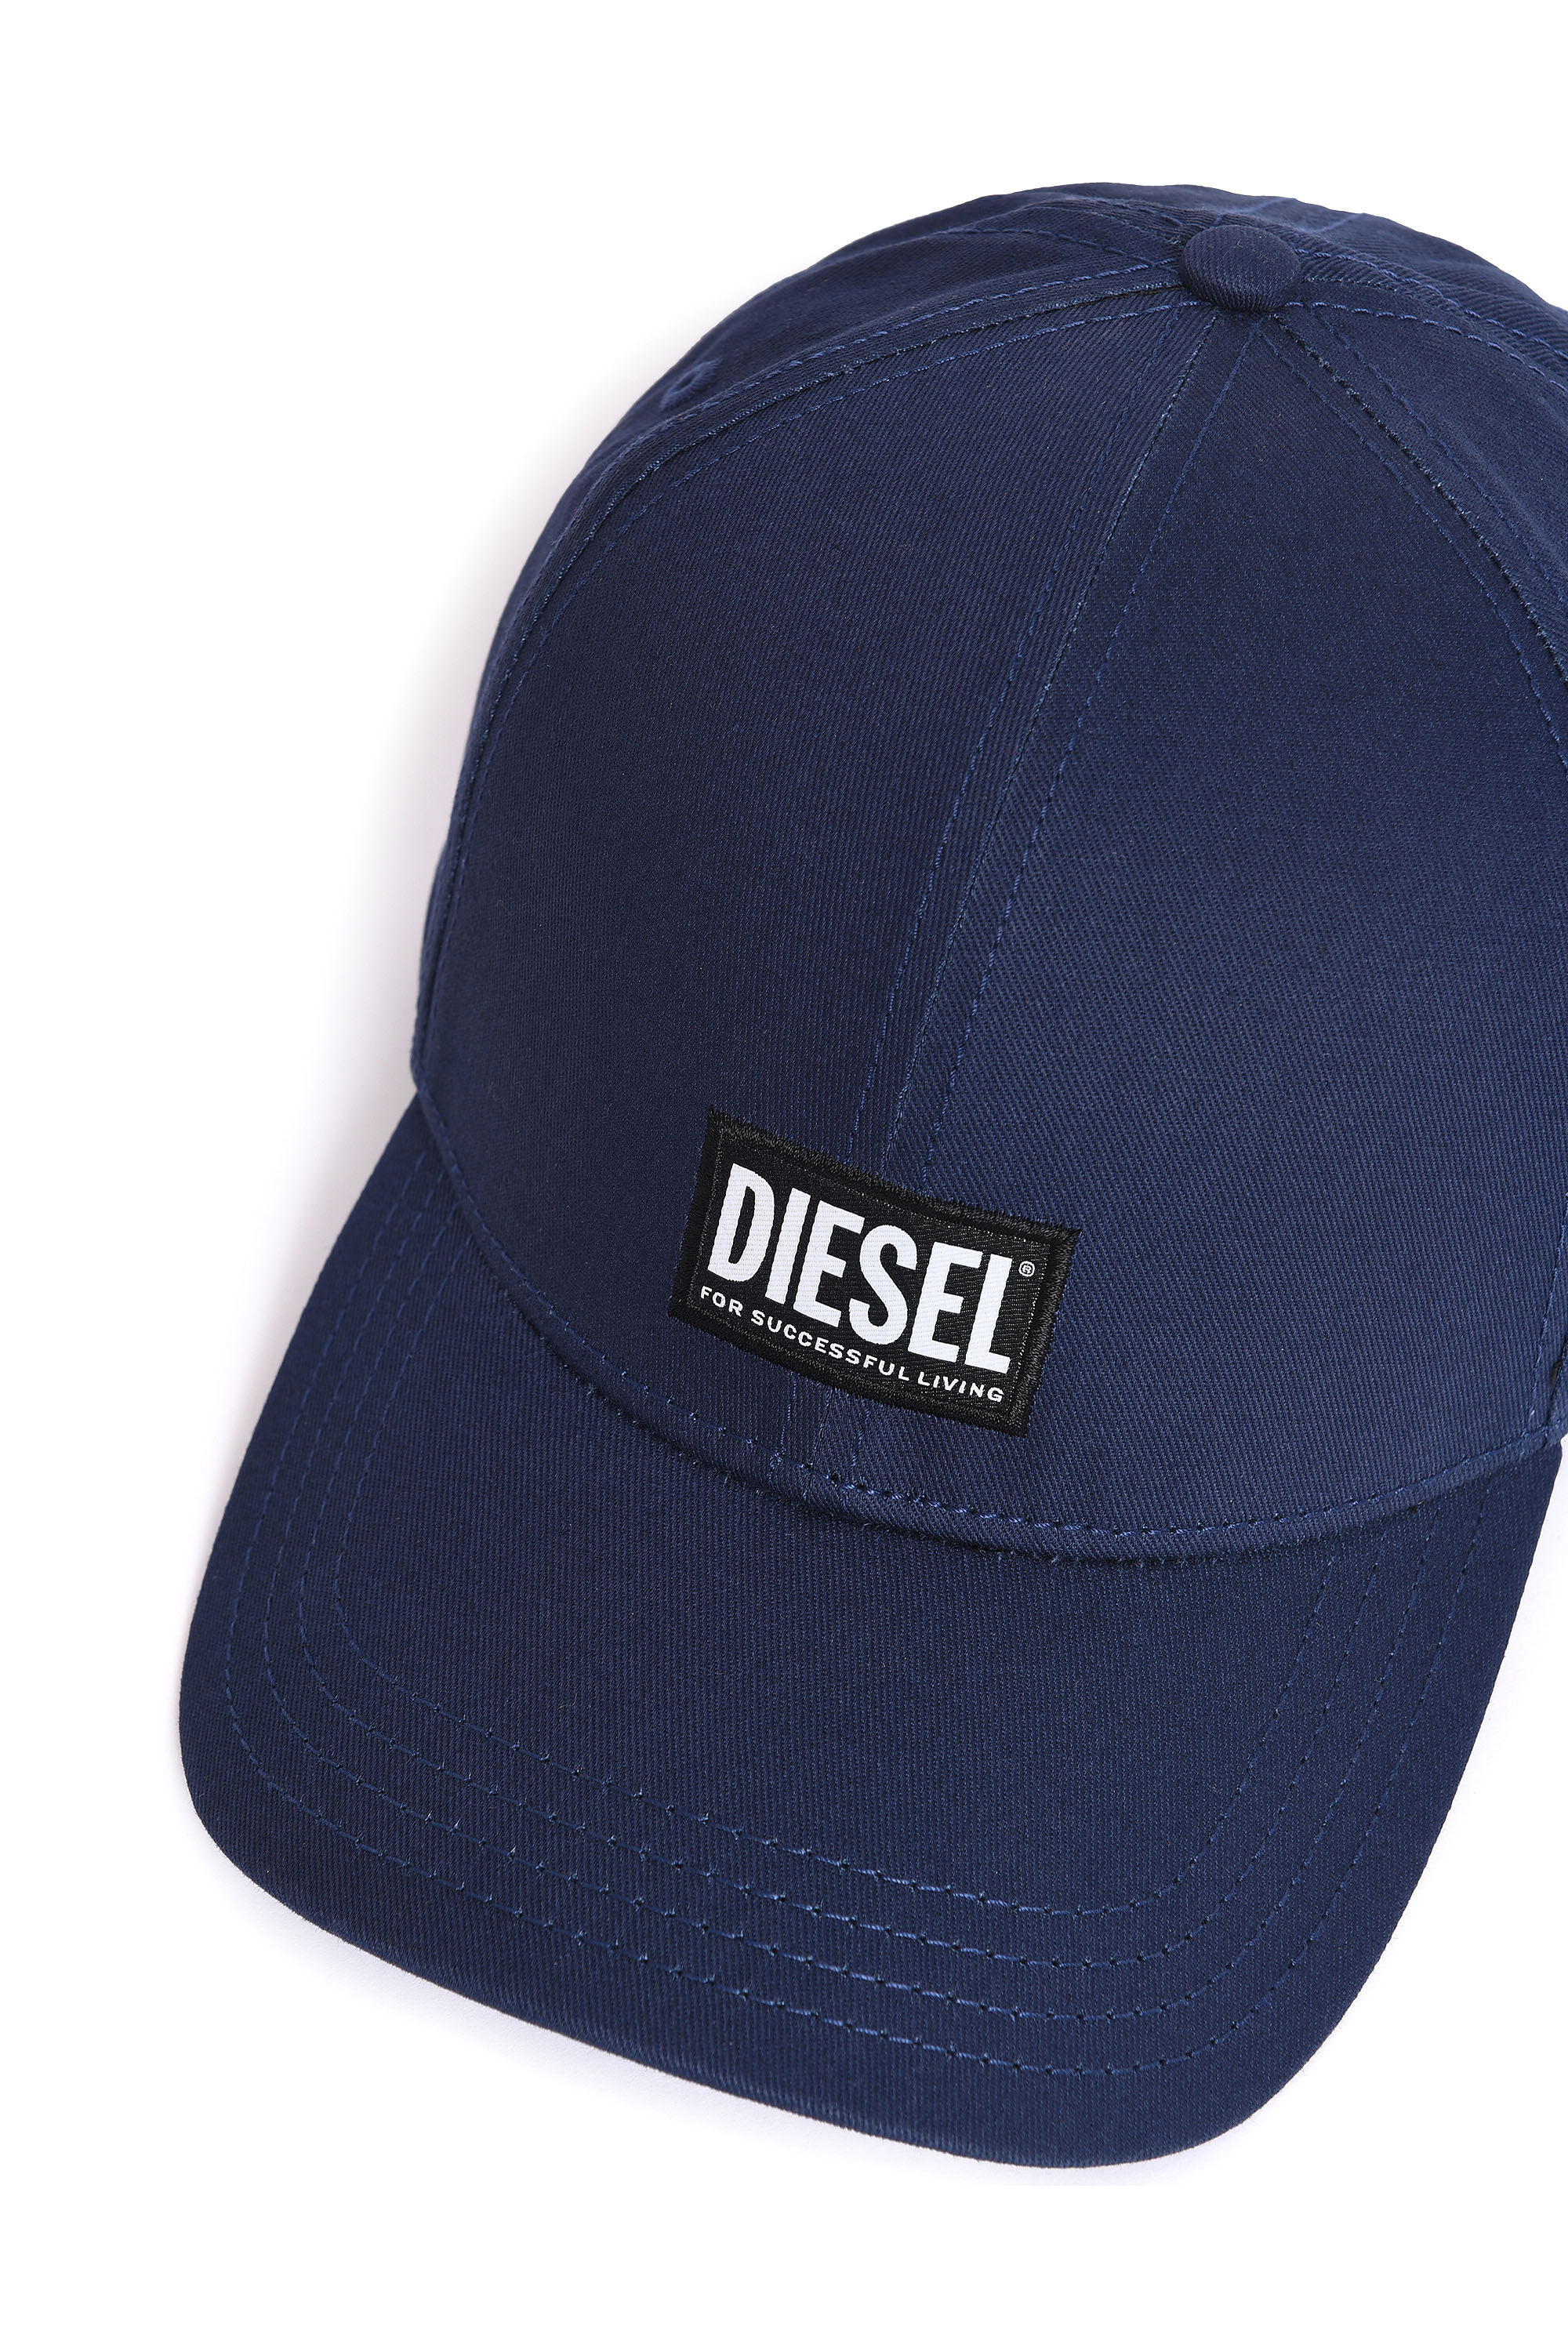 Diesel - CORRY, Blue - Image 3